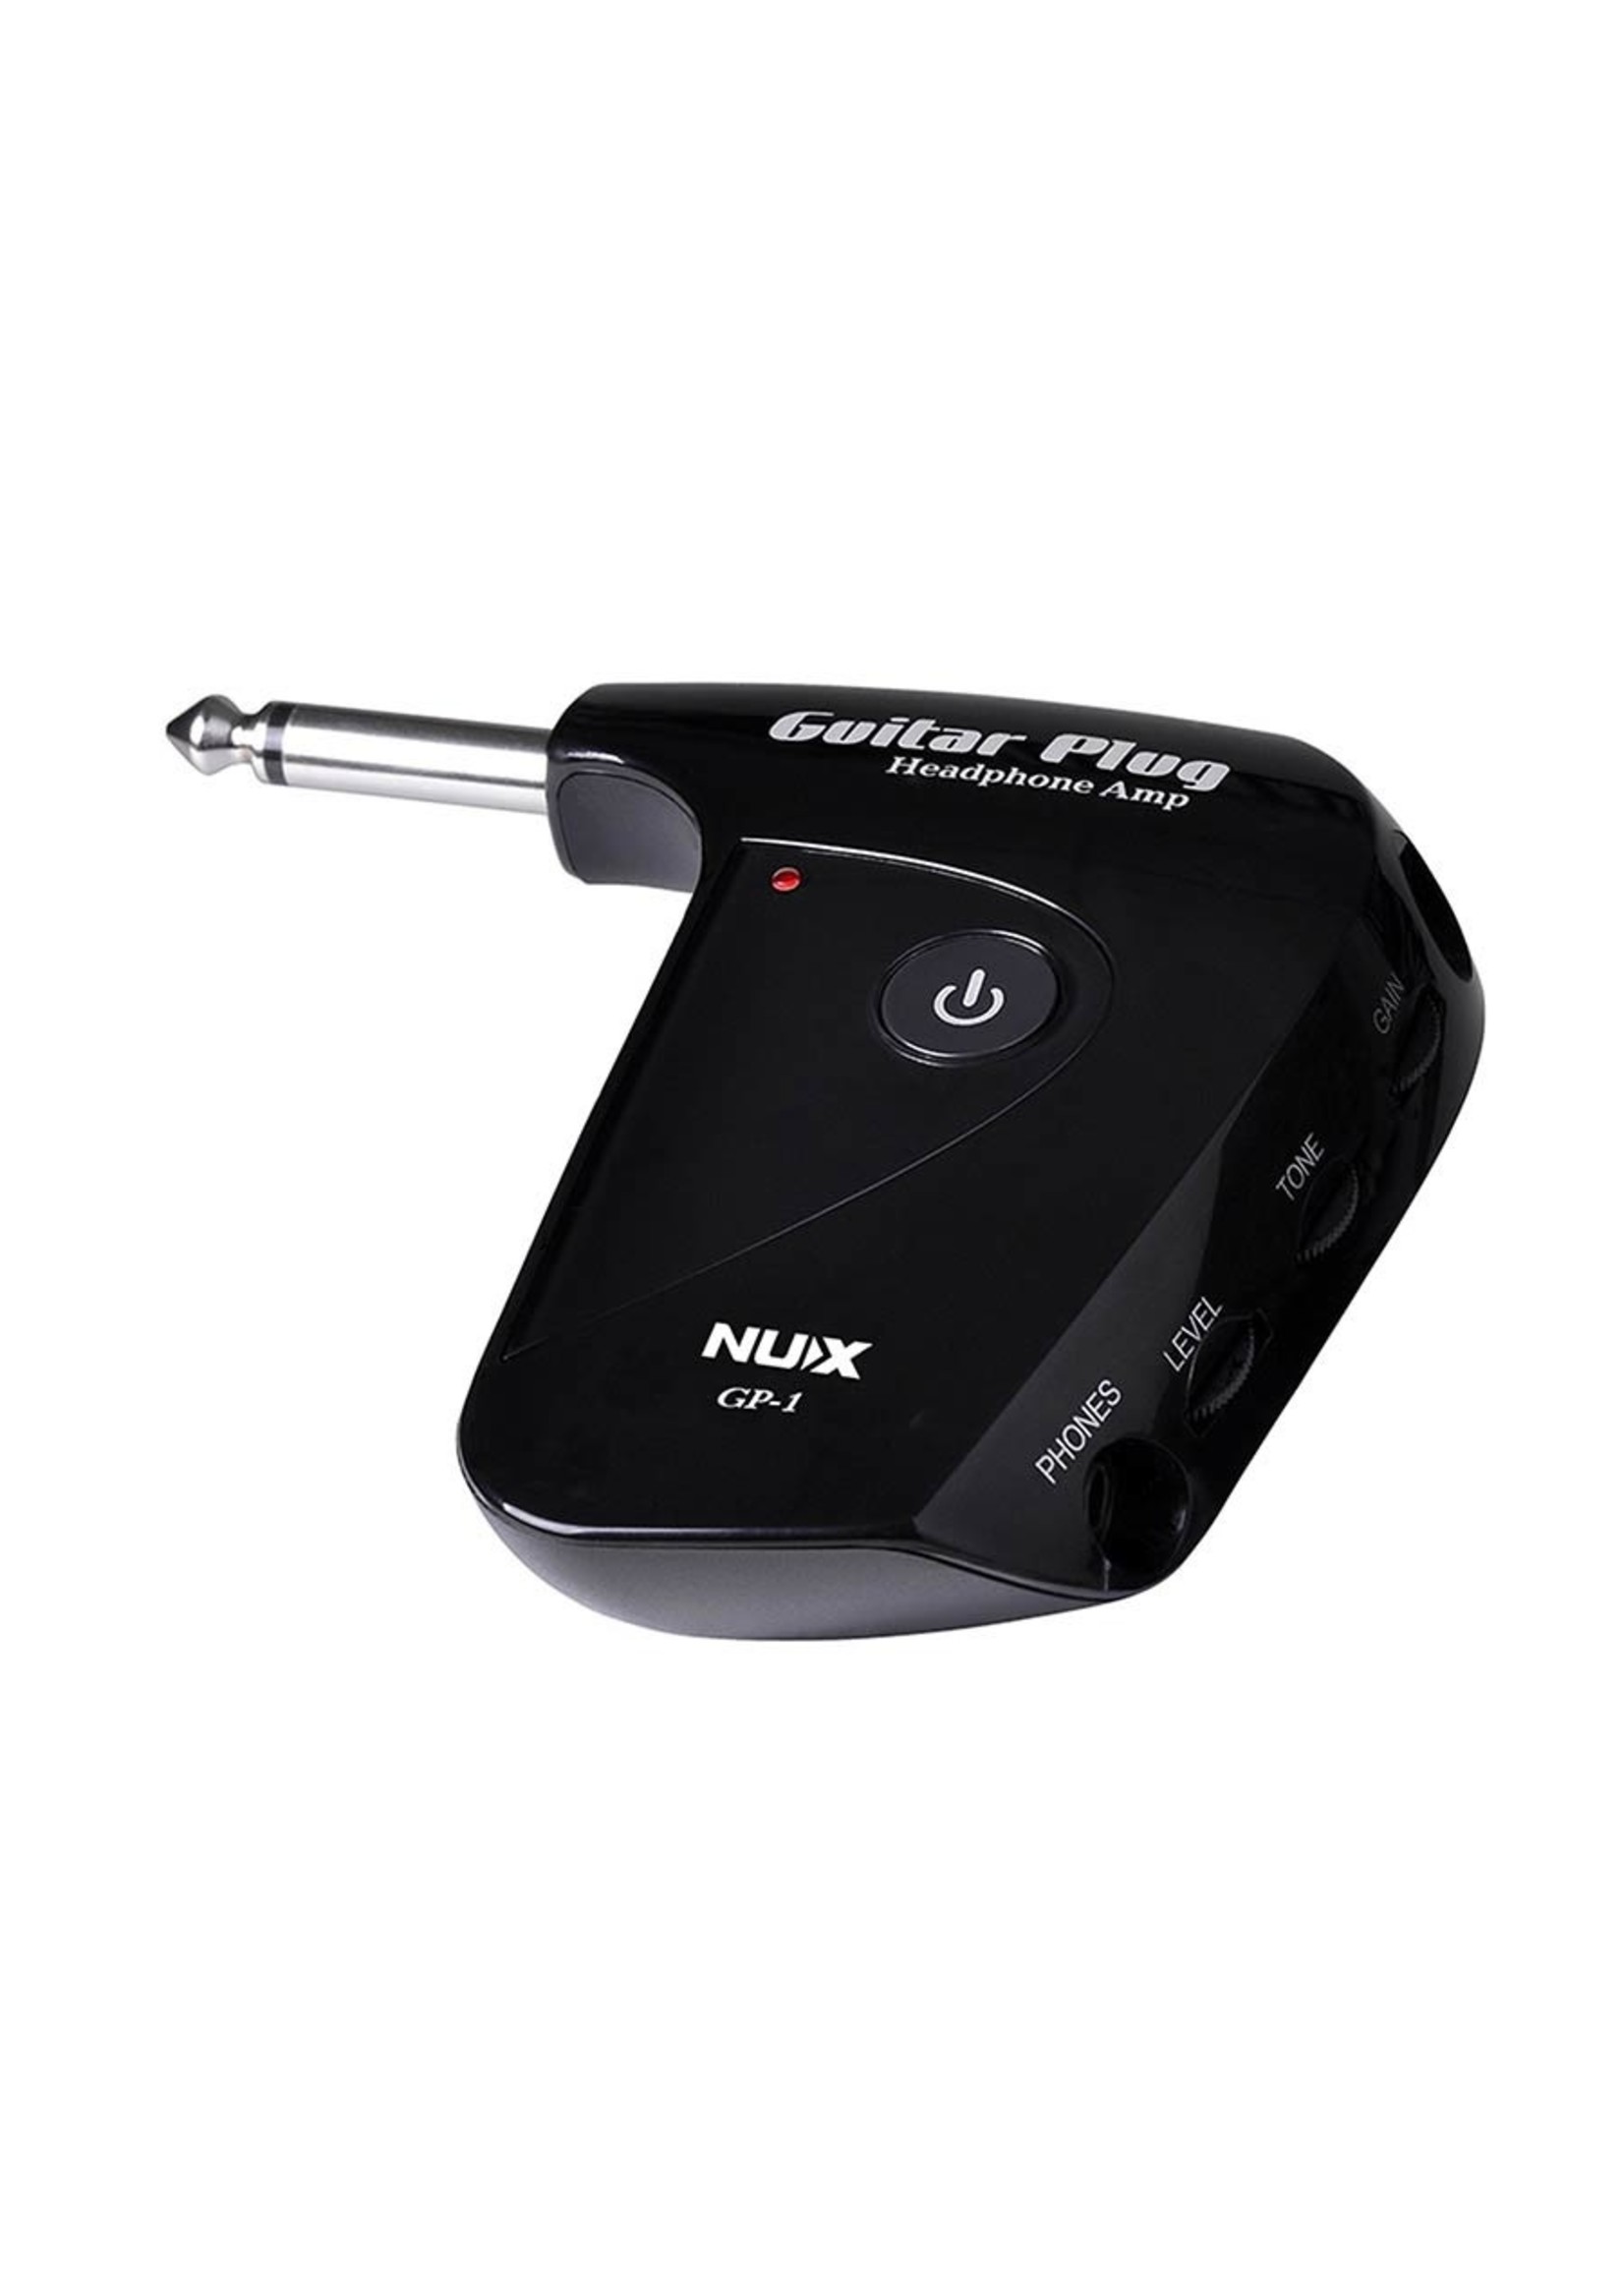 NUX Nux GP-1 Guitar plug headphone amp